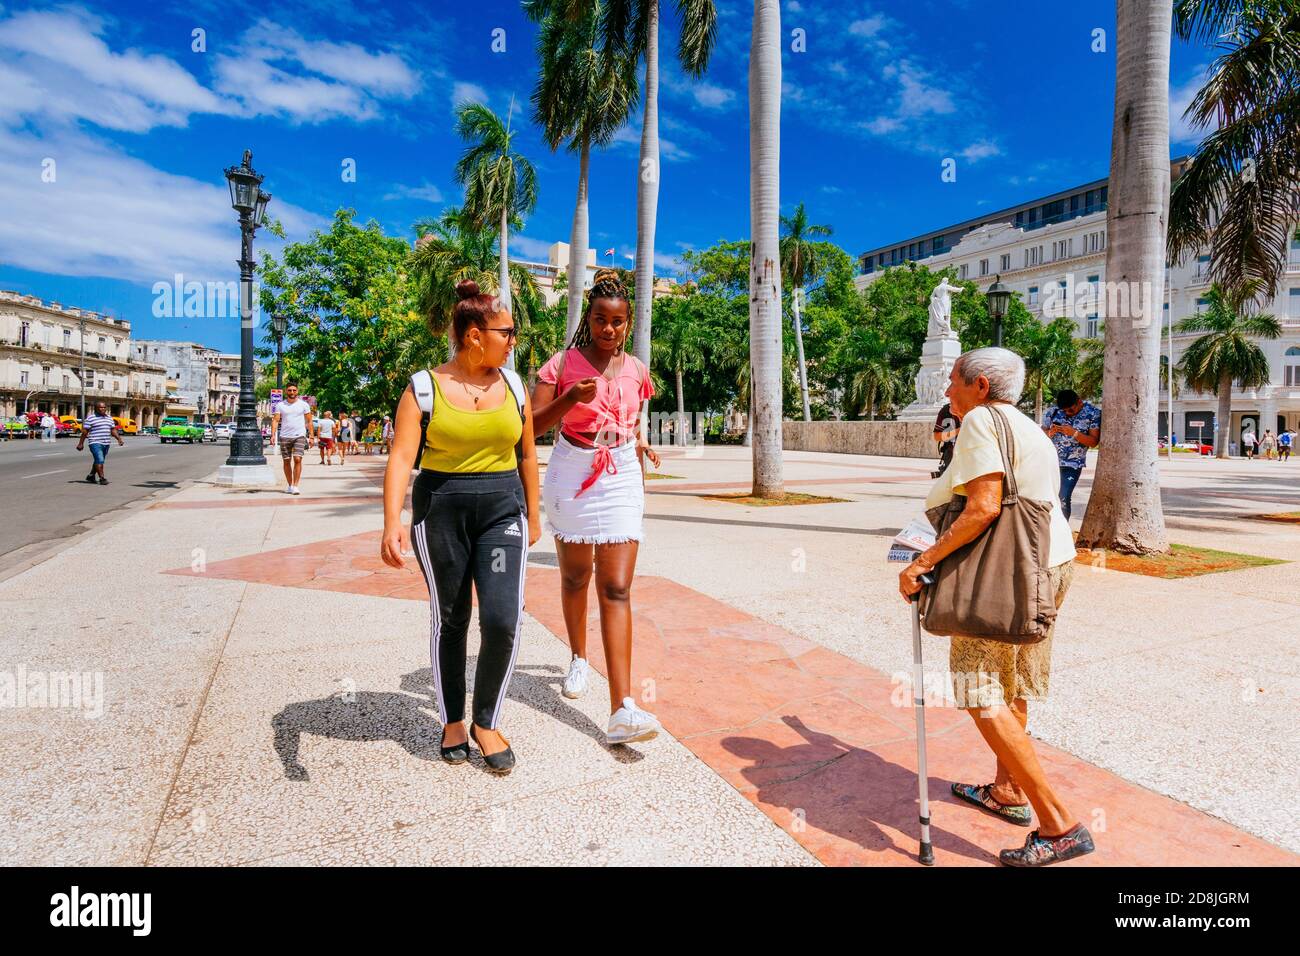 Zwei junge kubanische Mulatto-Frauen und eine ältere Frau gingen durch den Central Park - Parque Central. Havanna. Kuba, Lateinamerika und die Karibik Stockfoto